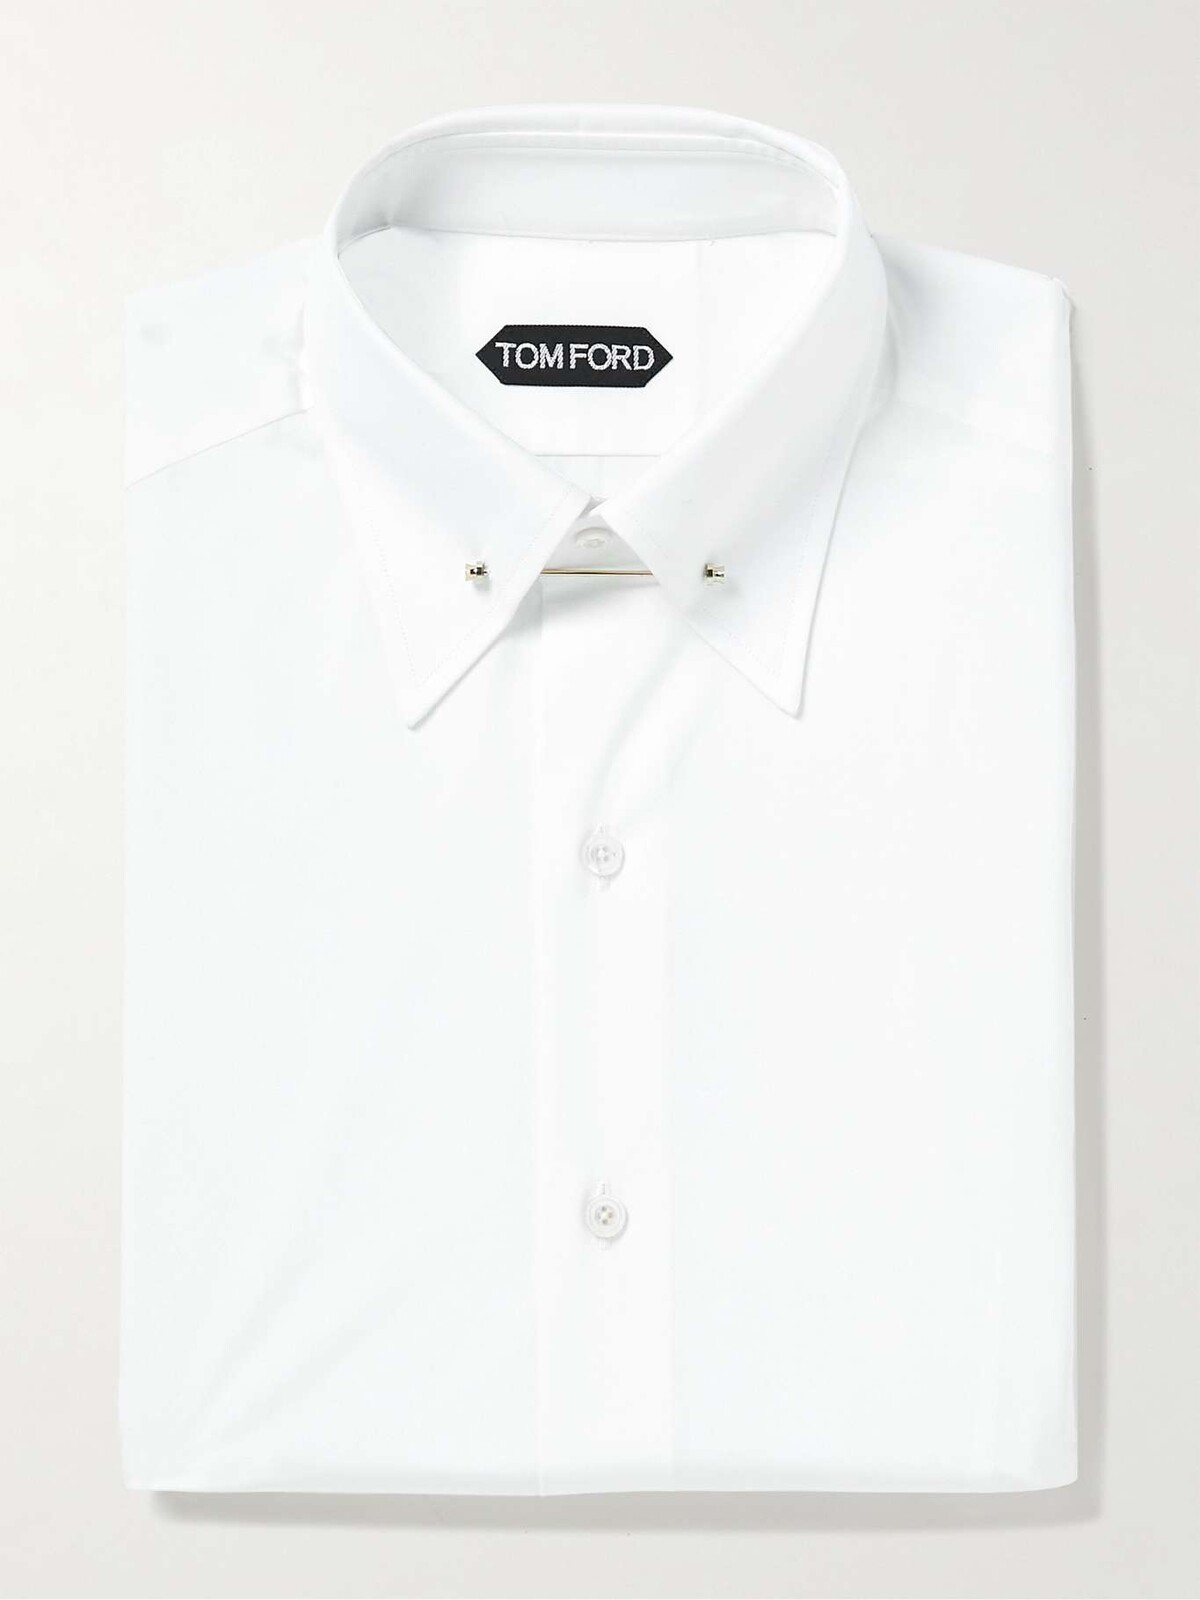 Bielu košeľu so zaujímavým zlatým detailom ponúka značka Tom Ford. Cena je 450 eur.